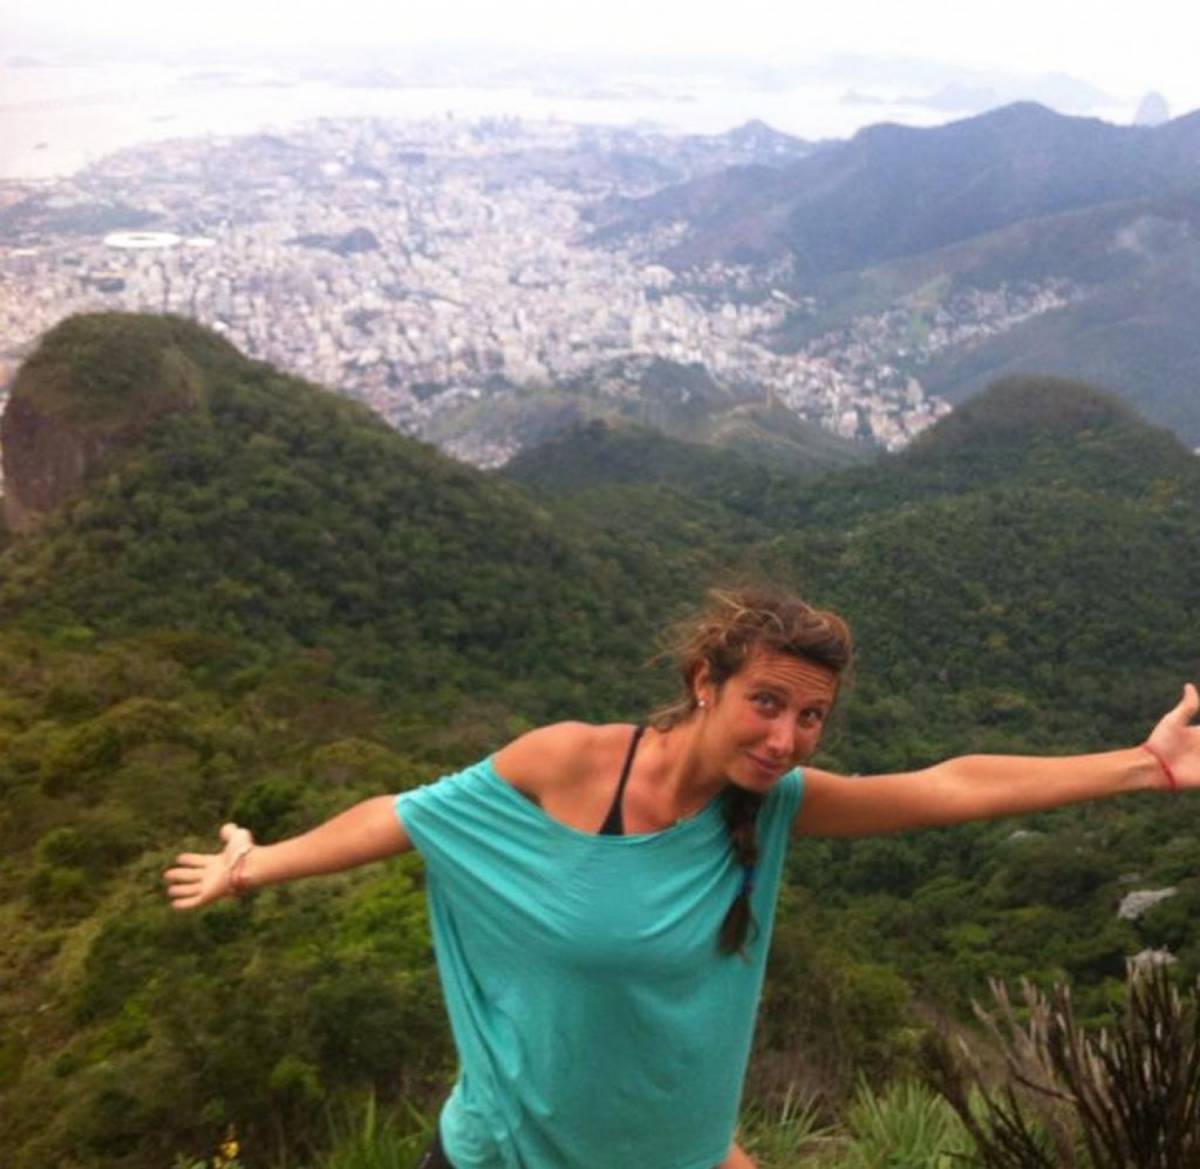 Gaia Molinari, la 29enne piacentina trovata morta in Brasile